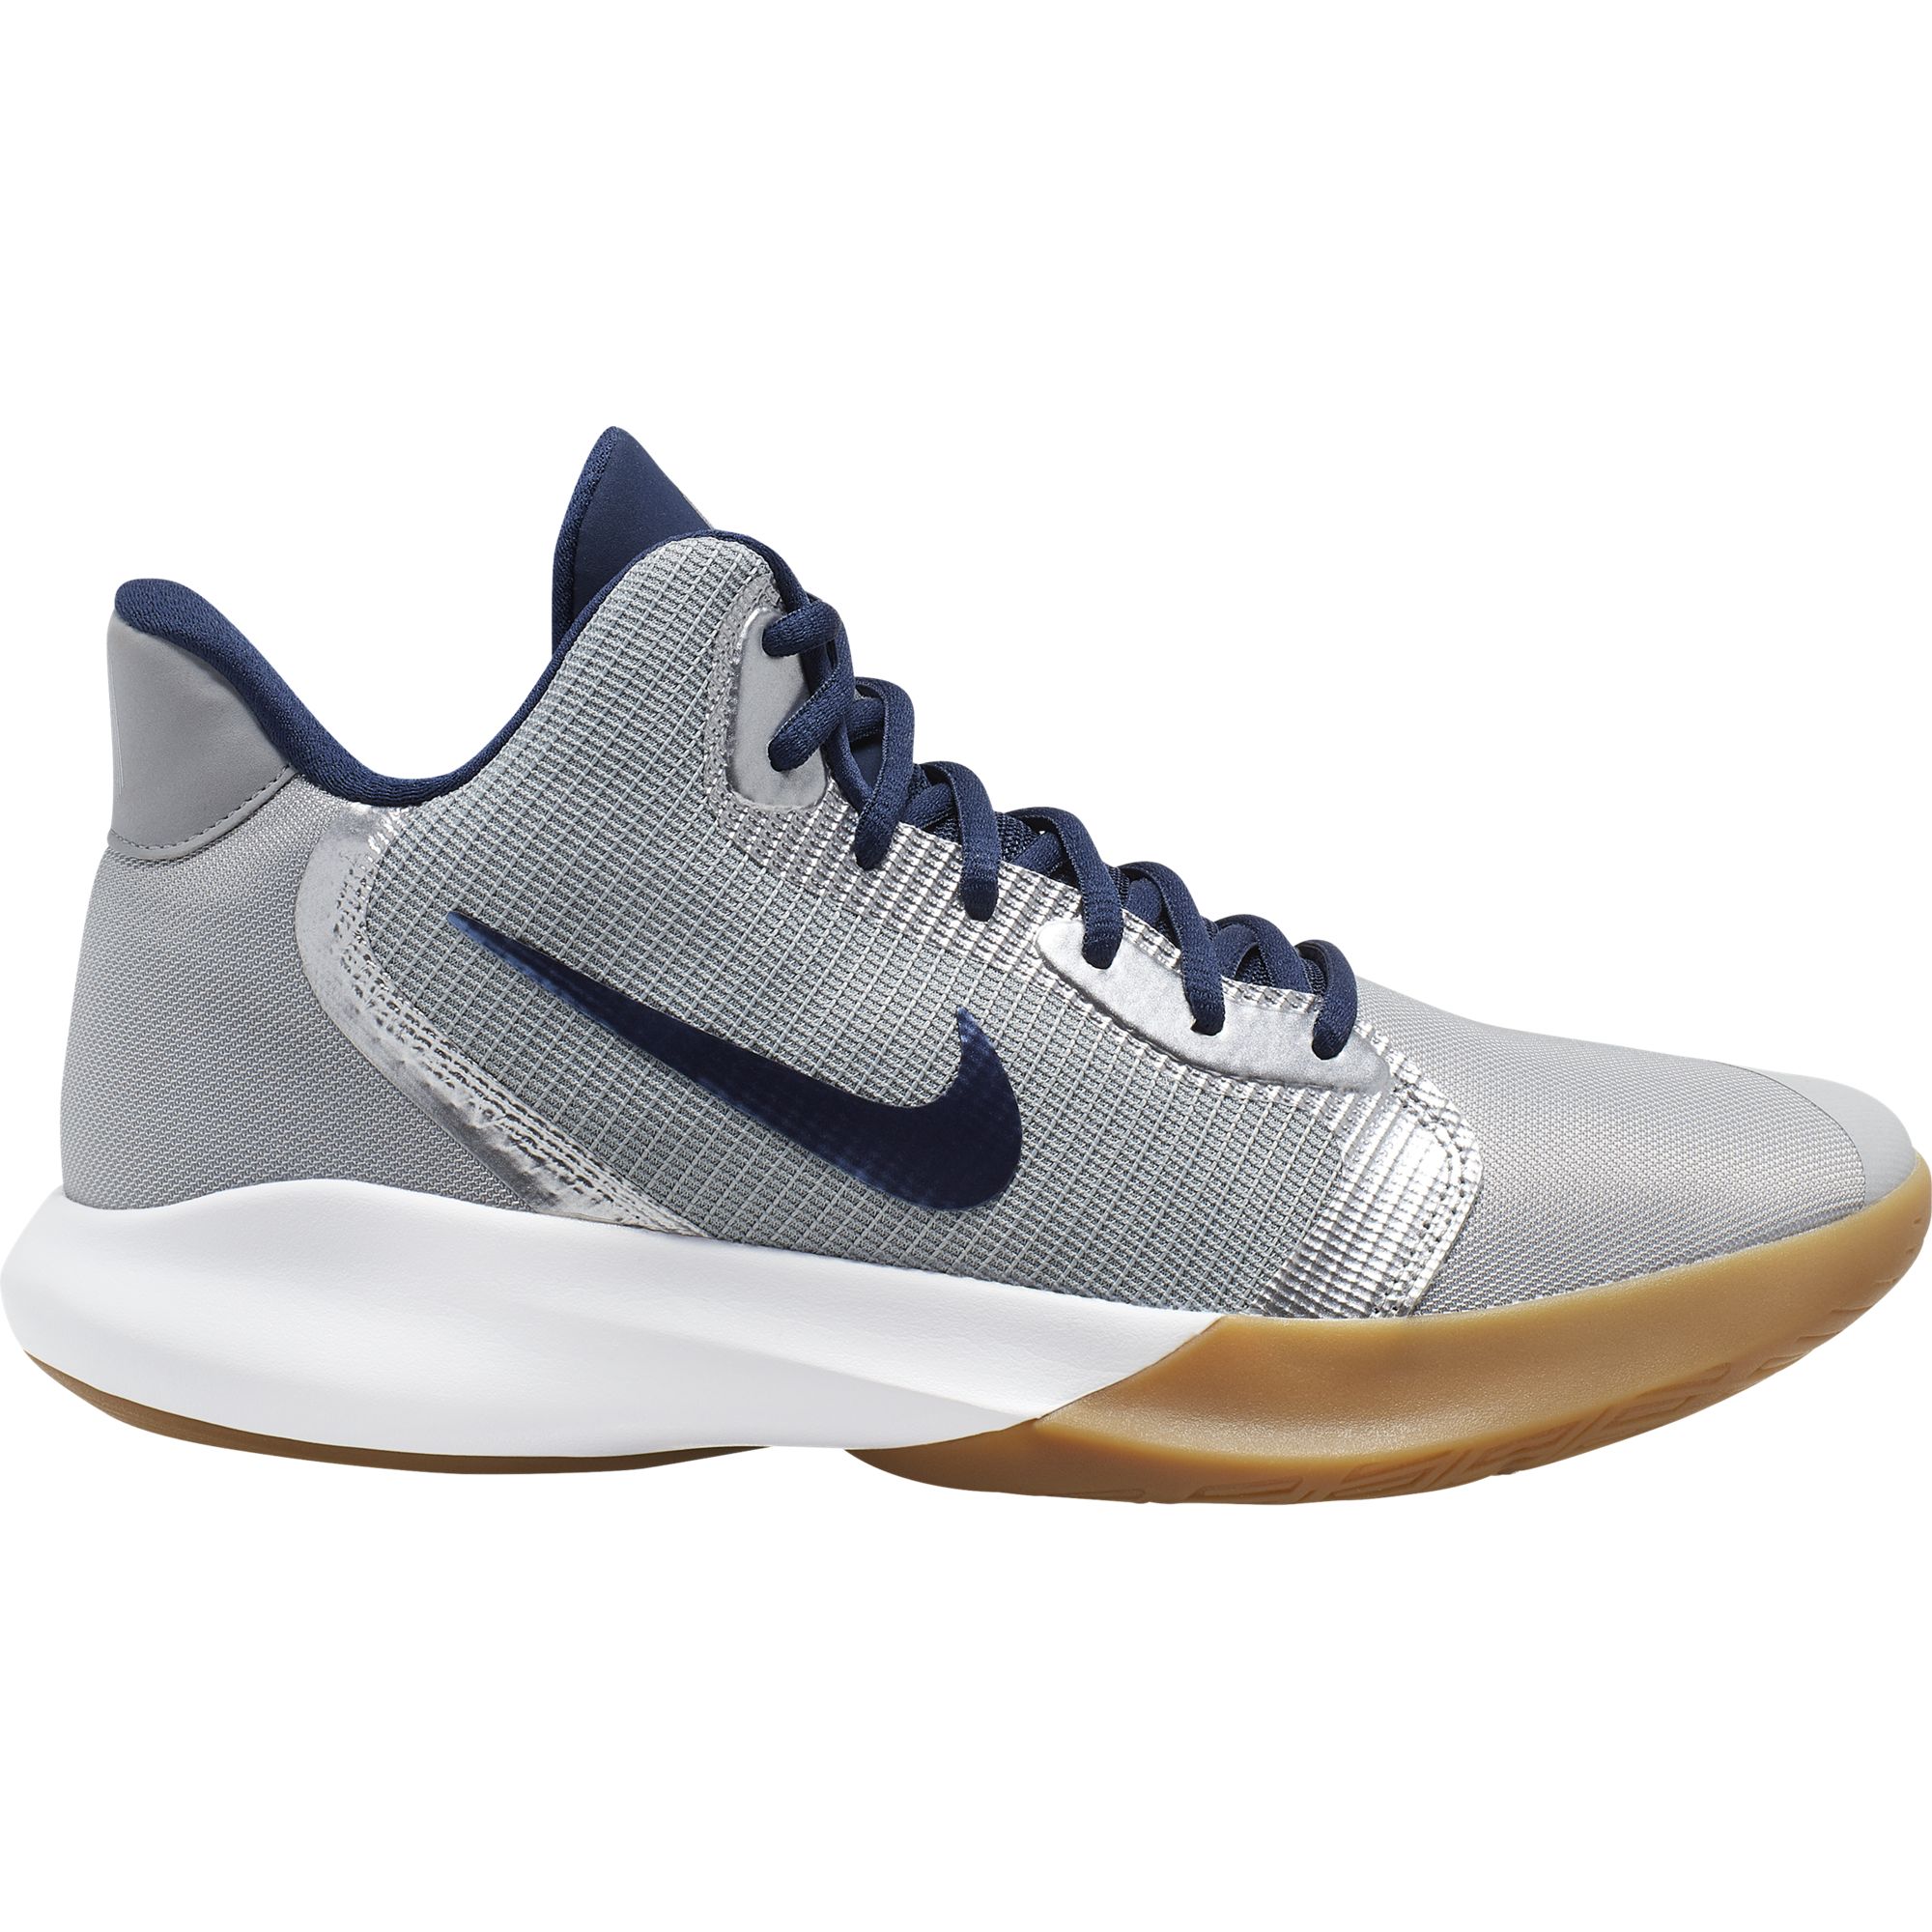 Баскетбольные кроссовки Nike Precision III